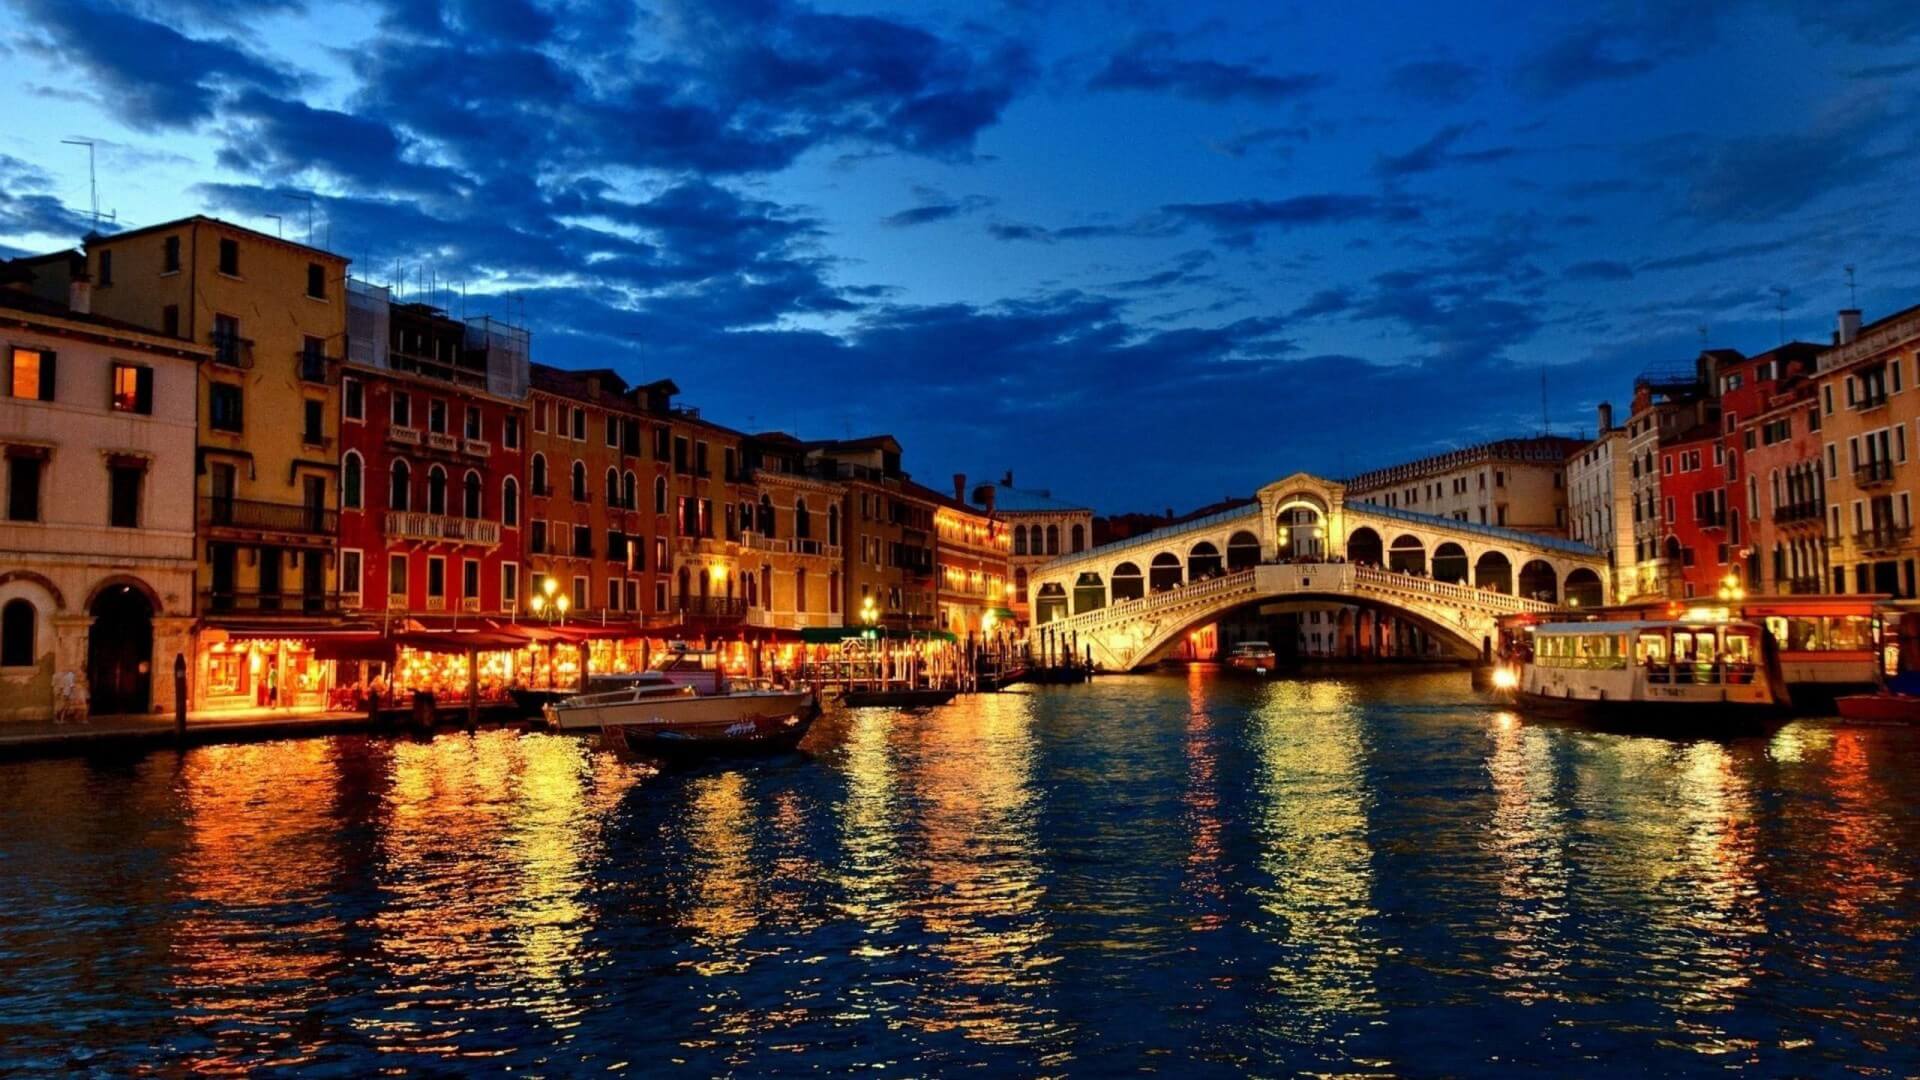 Επί πληρωμή η είσοδος στη Βενετία για τους τουρίστες